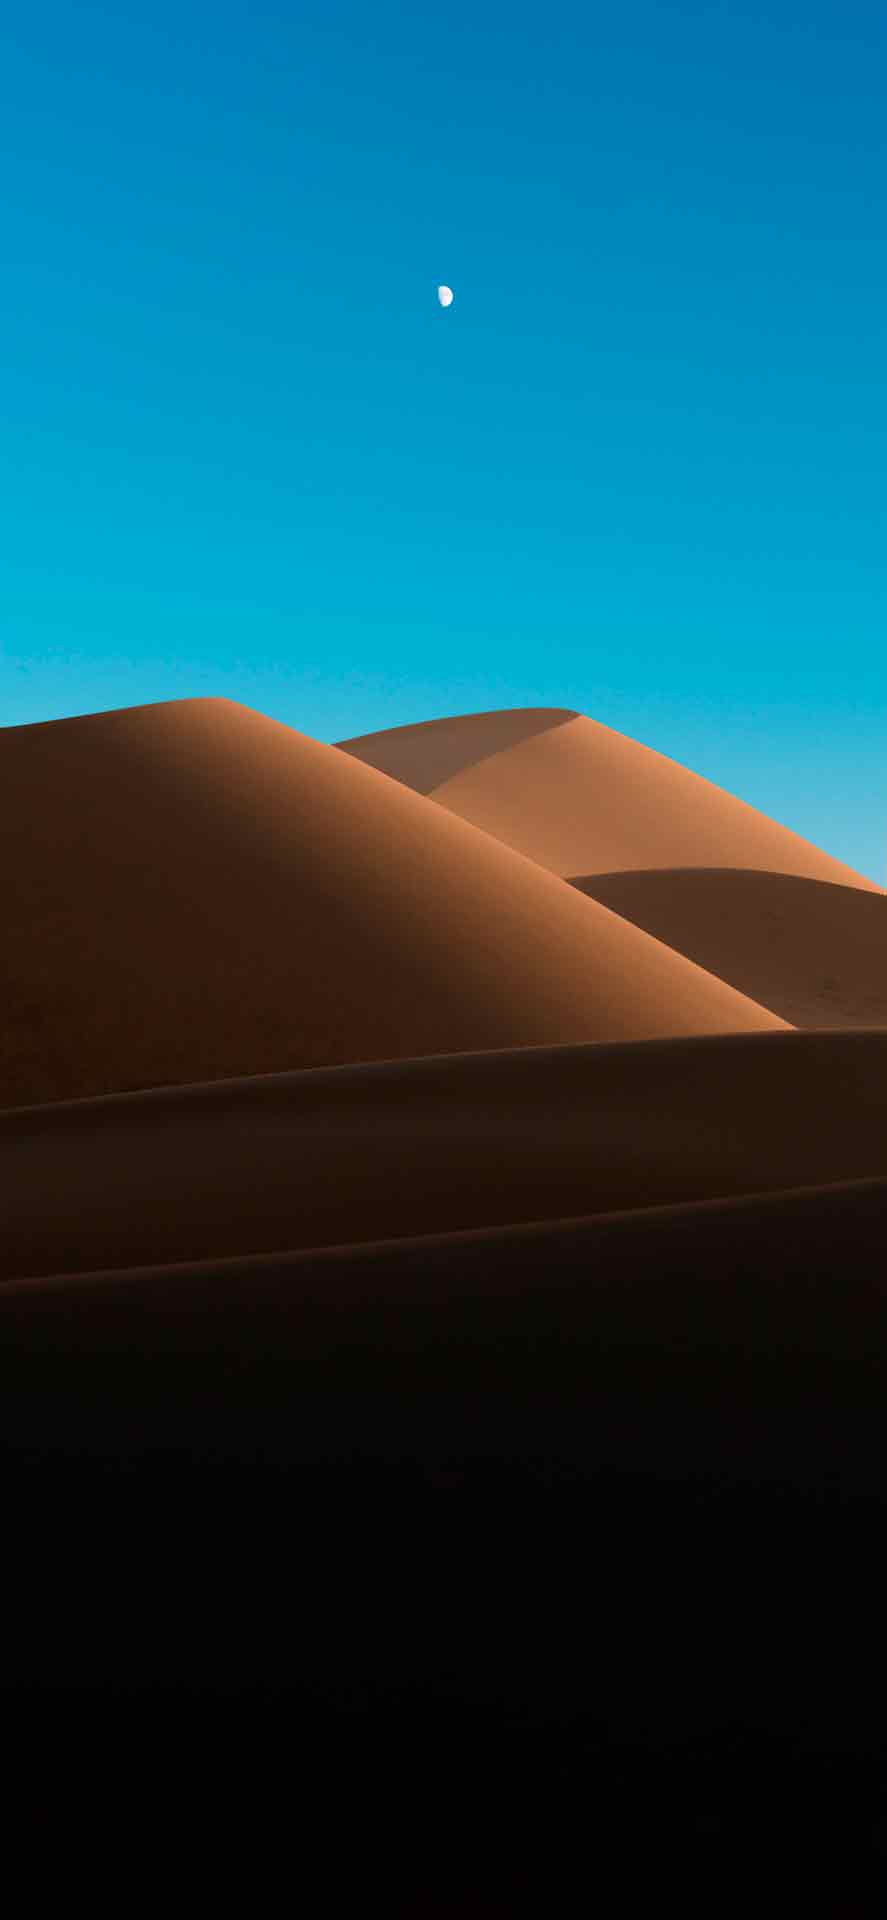 沙漠沙丘与渐变的天空 iPhone 壁纸 04